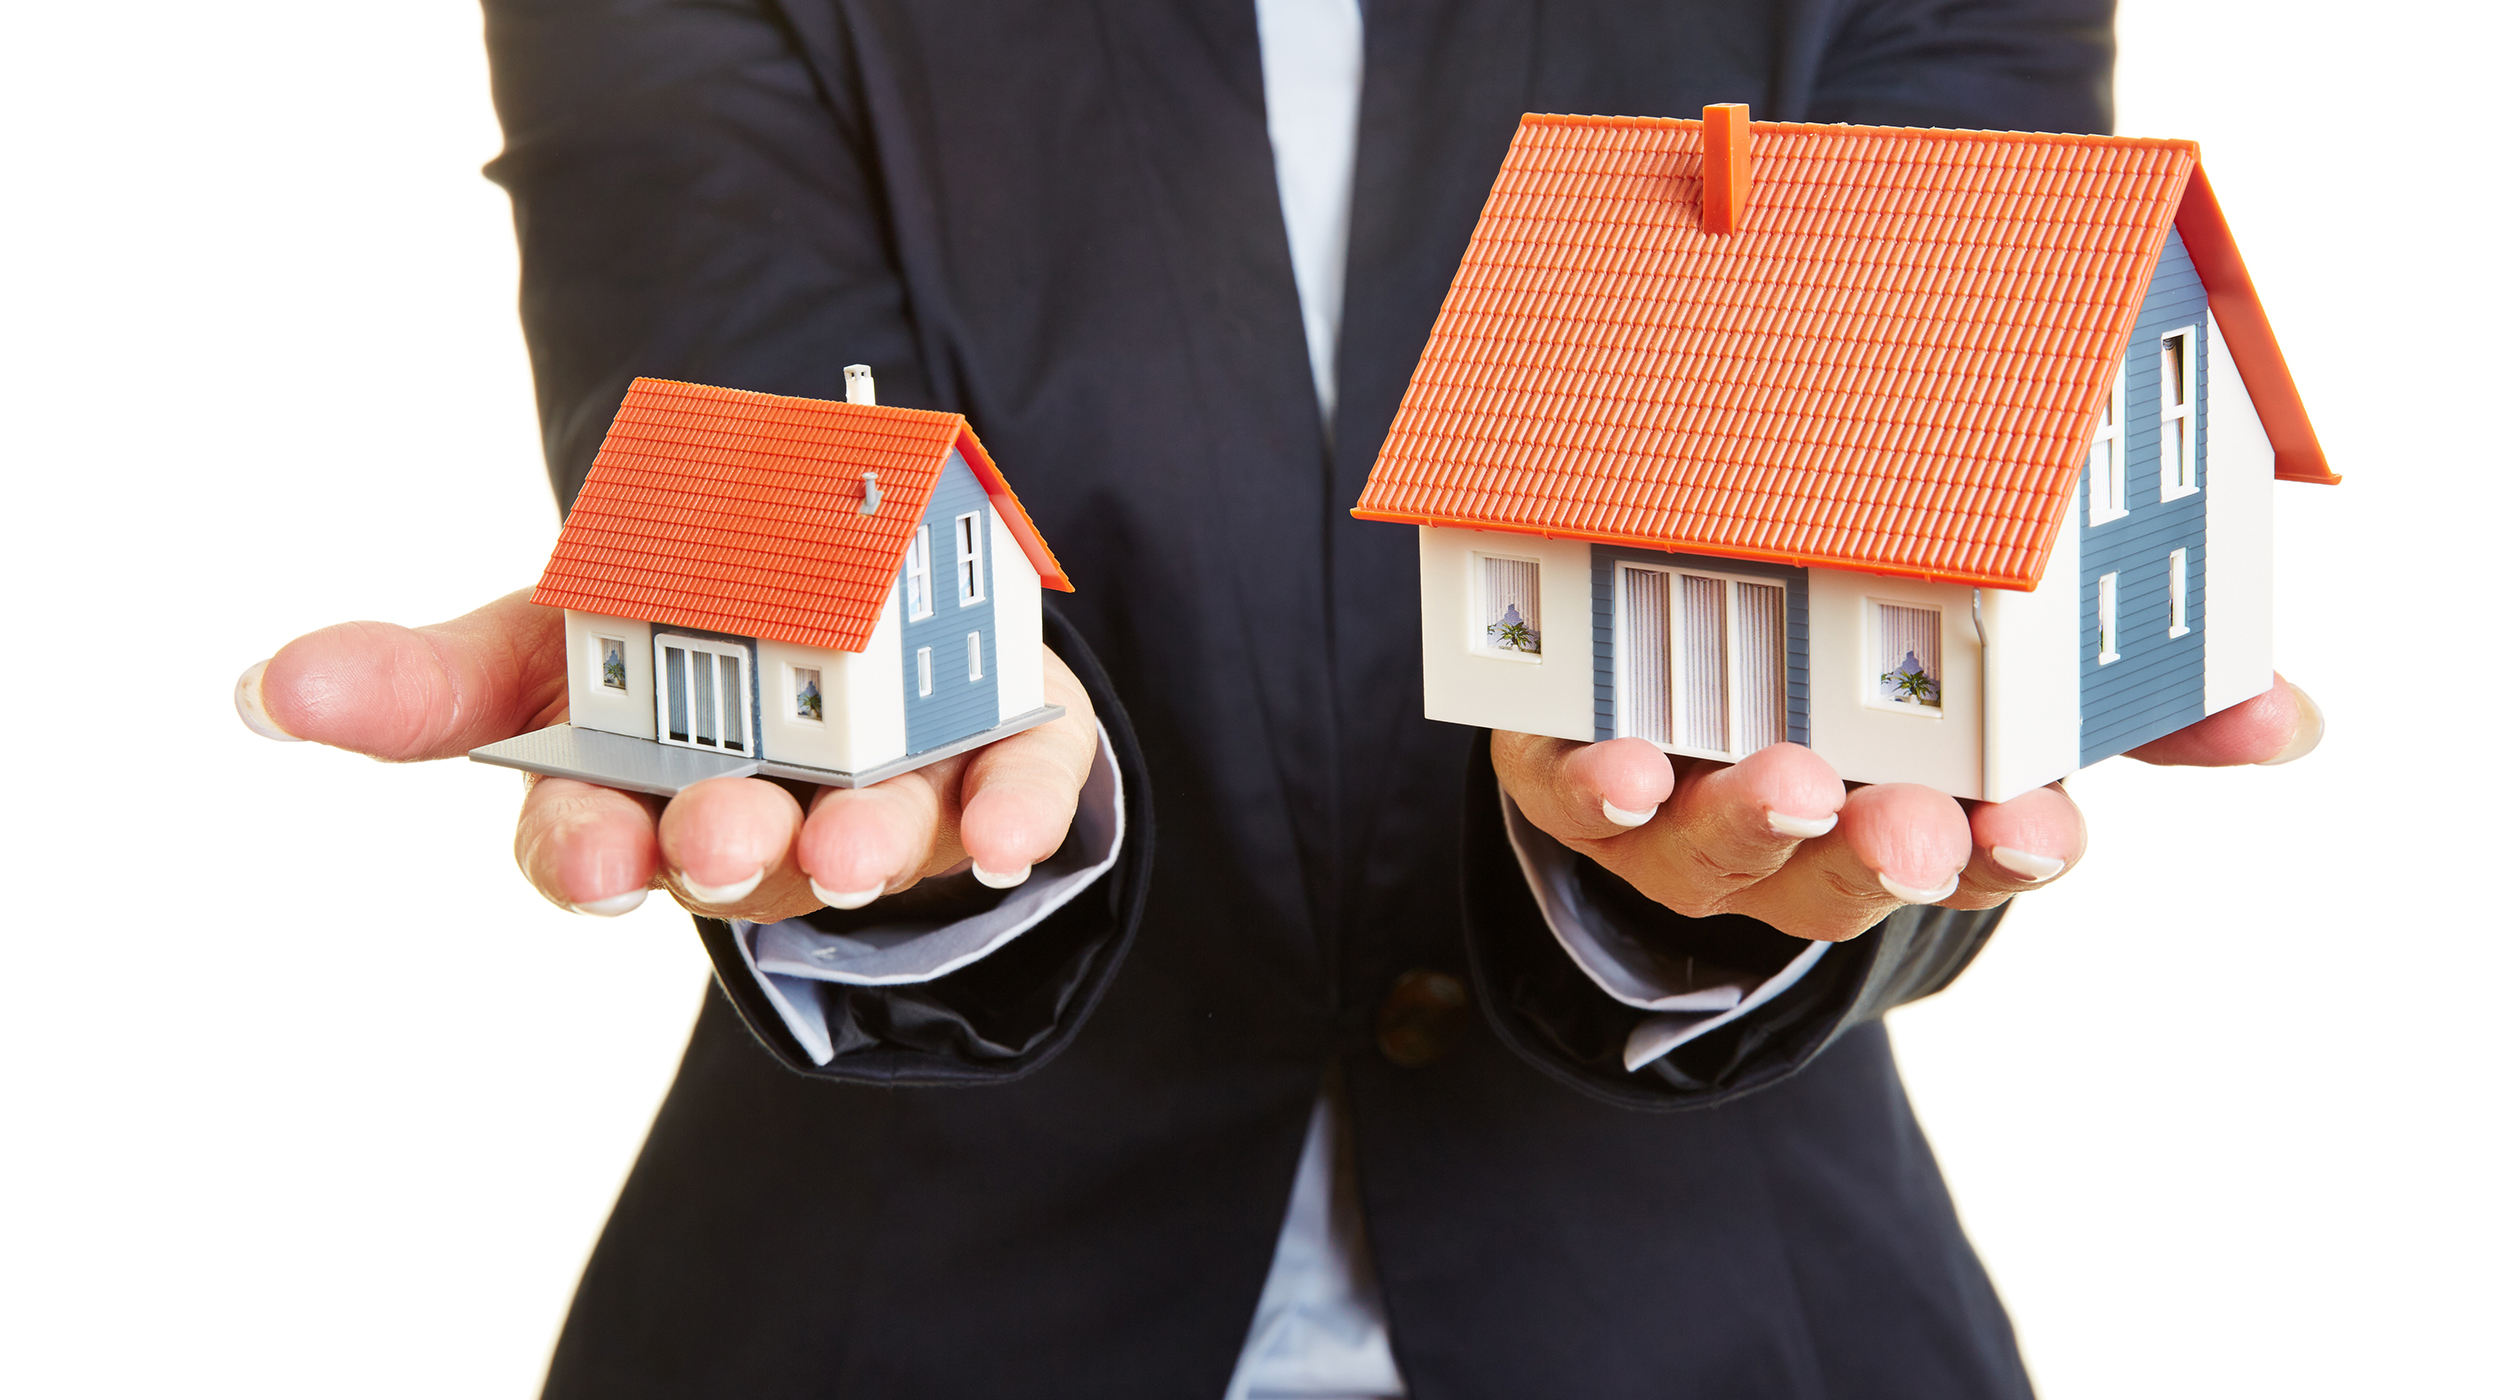 Продажа квартиры обязали. Недвижимое имущество это. Сделка по недвижимости. Сделки с недвижимым имуществом. Альтернативная сделка с недвижимостью.